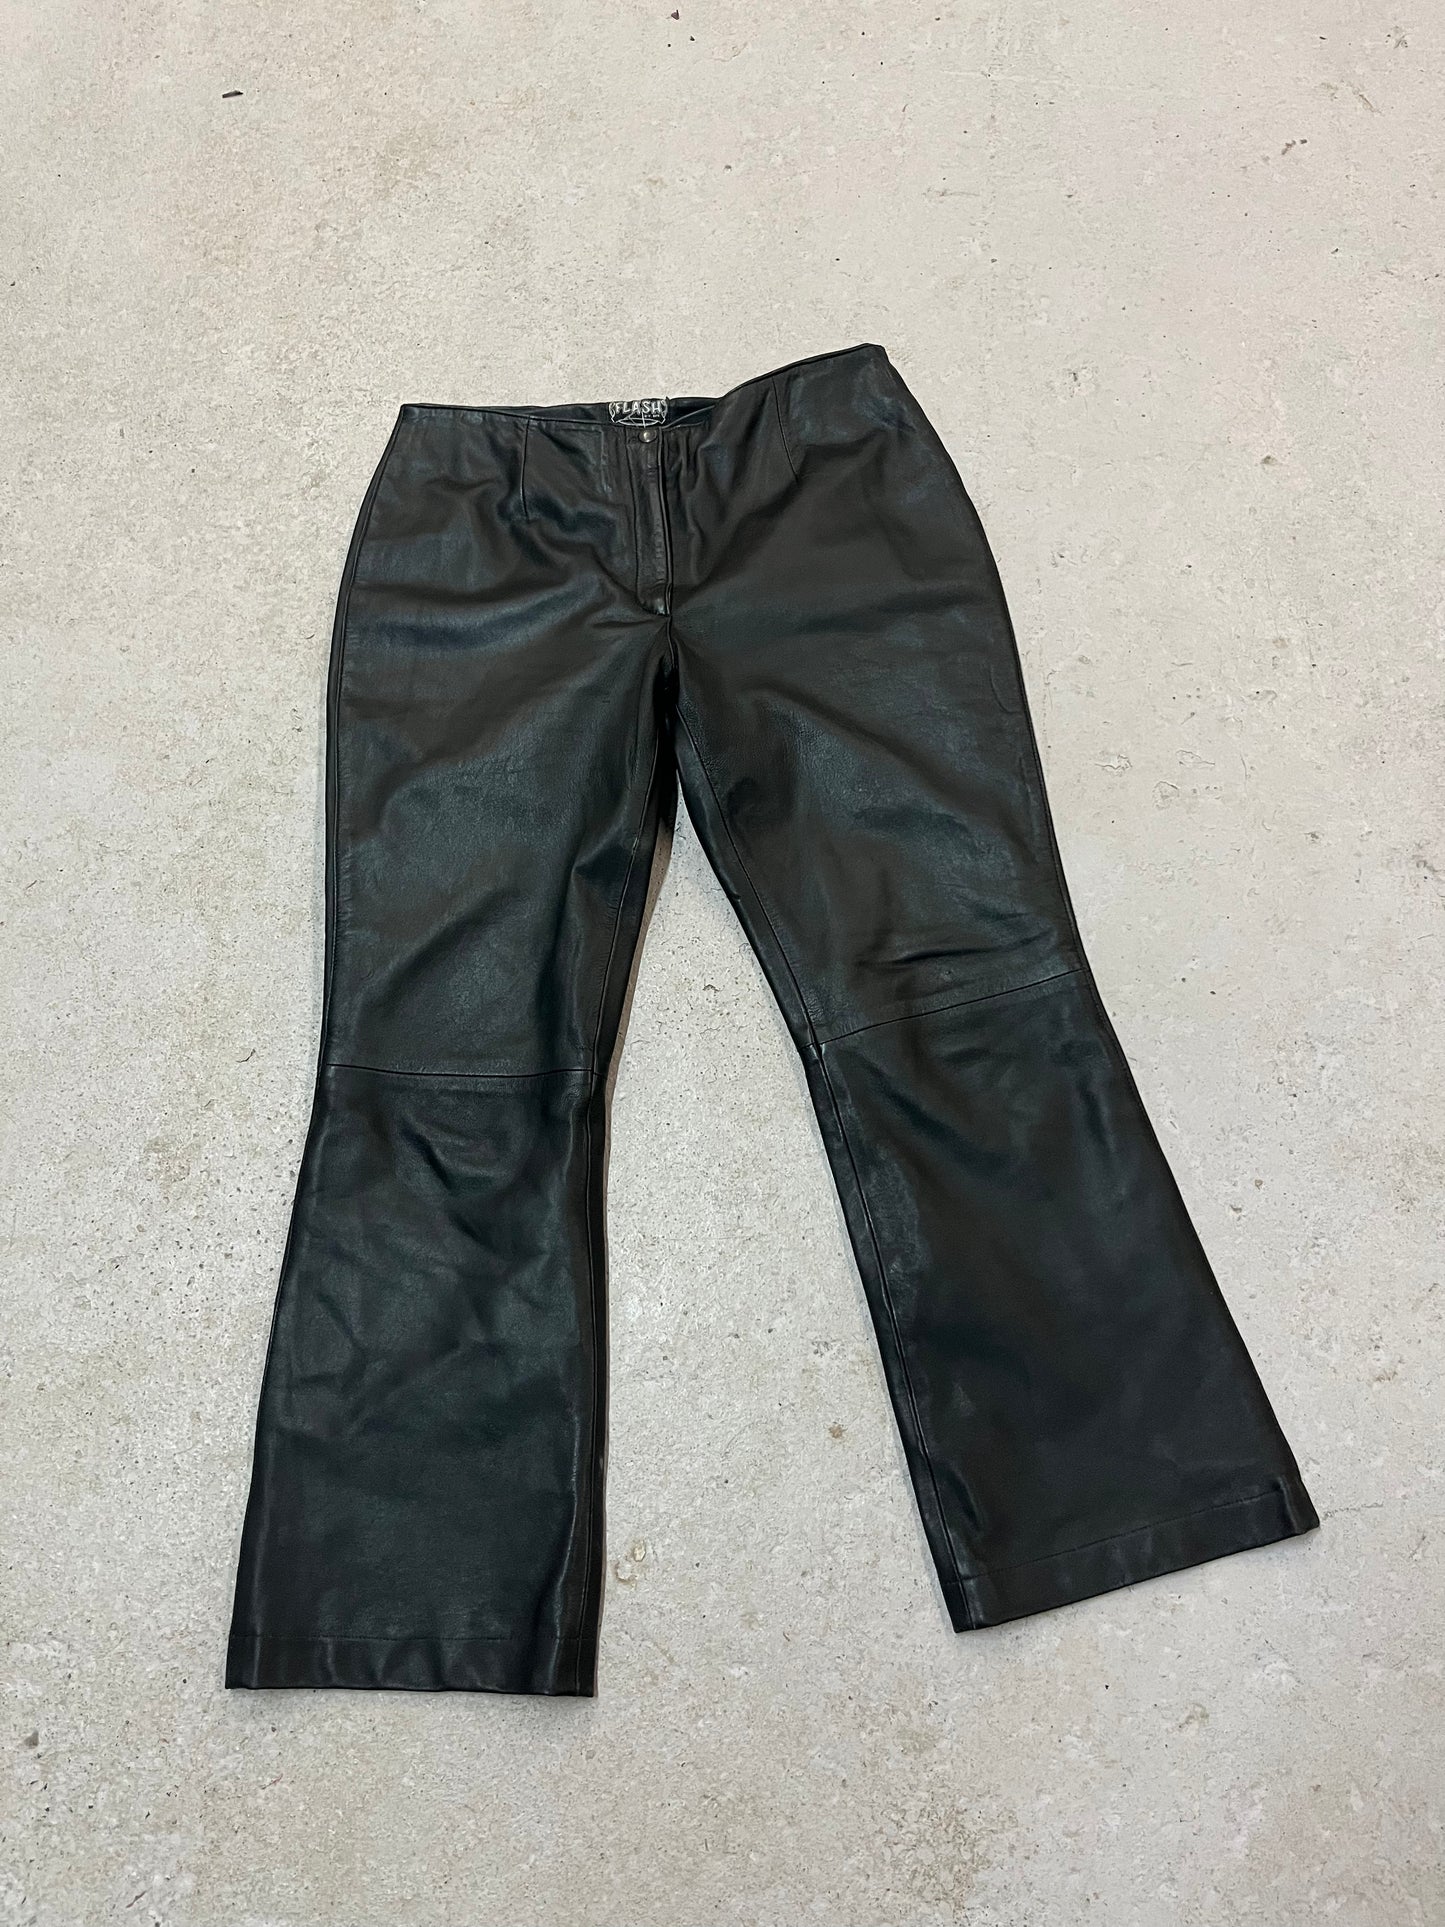 90’s Vintage Black Leather Mid Rise Kick Flare Pants / 32 Waist